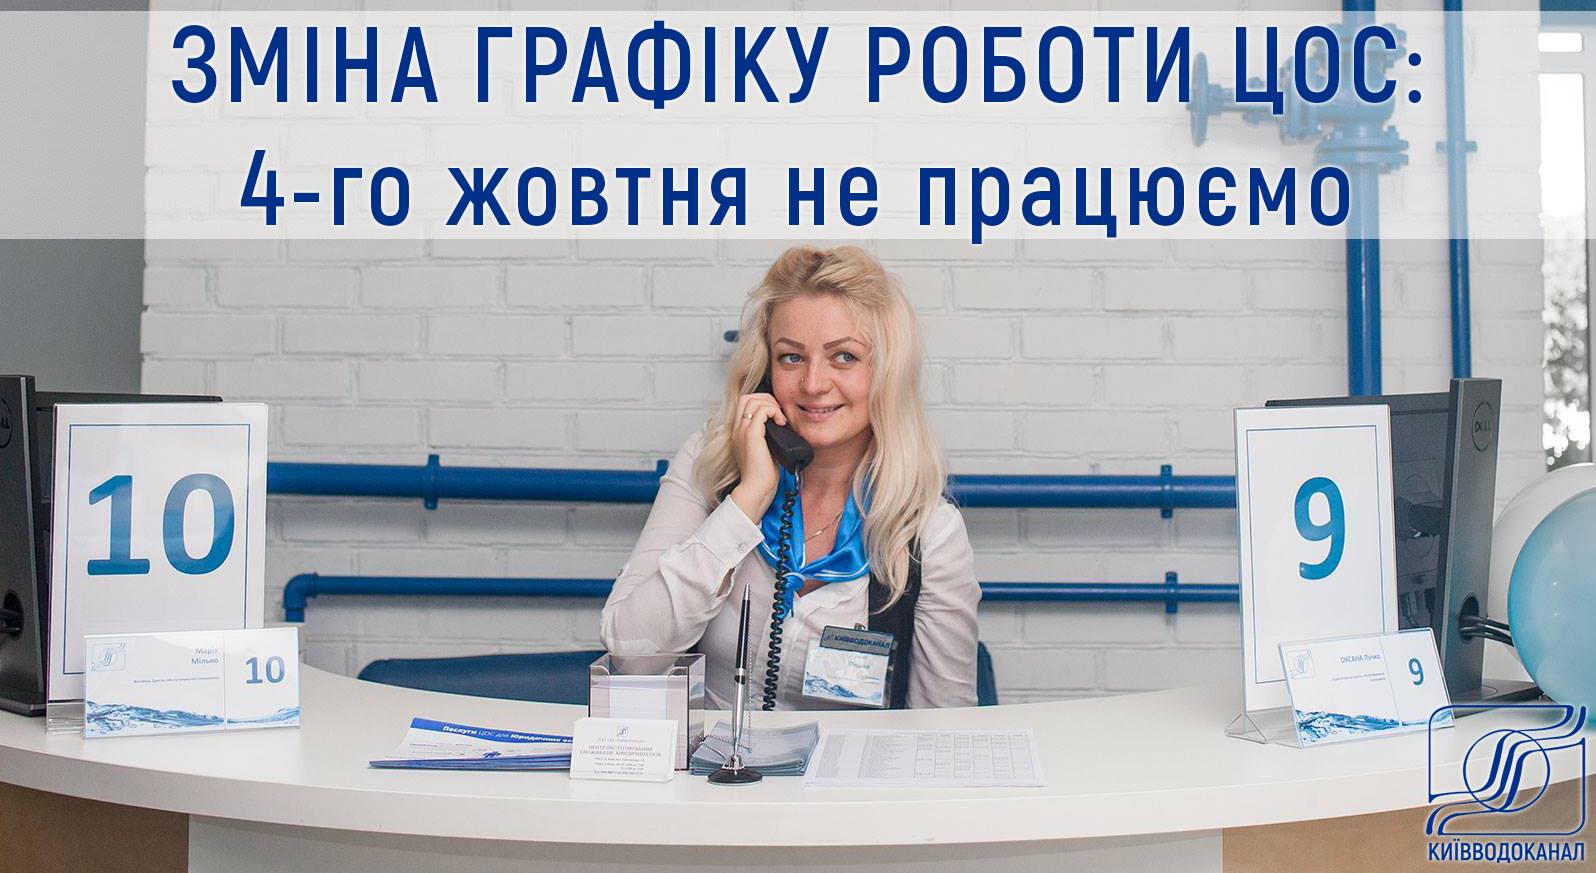 Центры обслуживания потребителей “Киевводоканала” не будут работать 4 октября